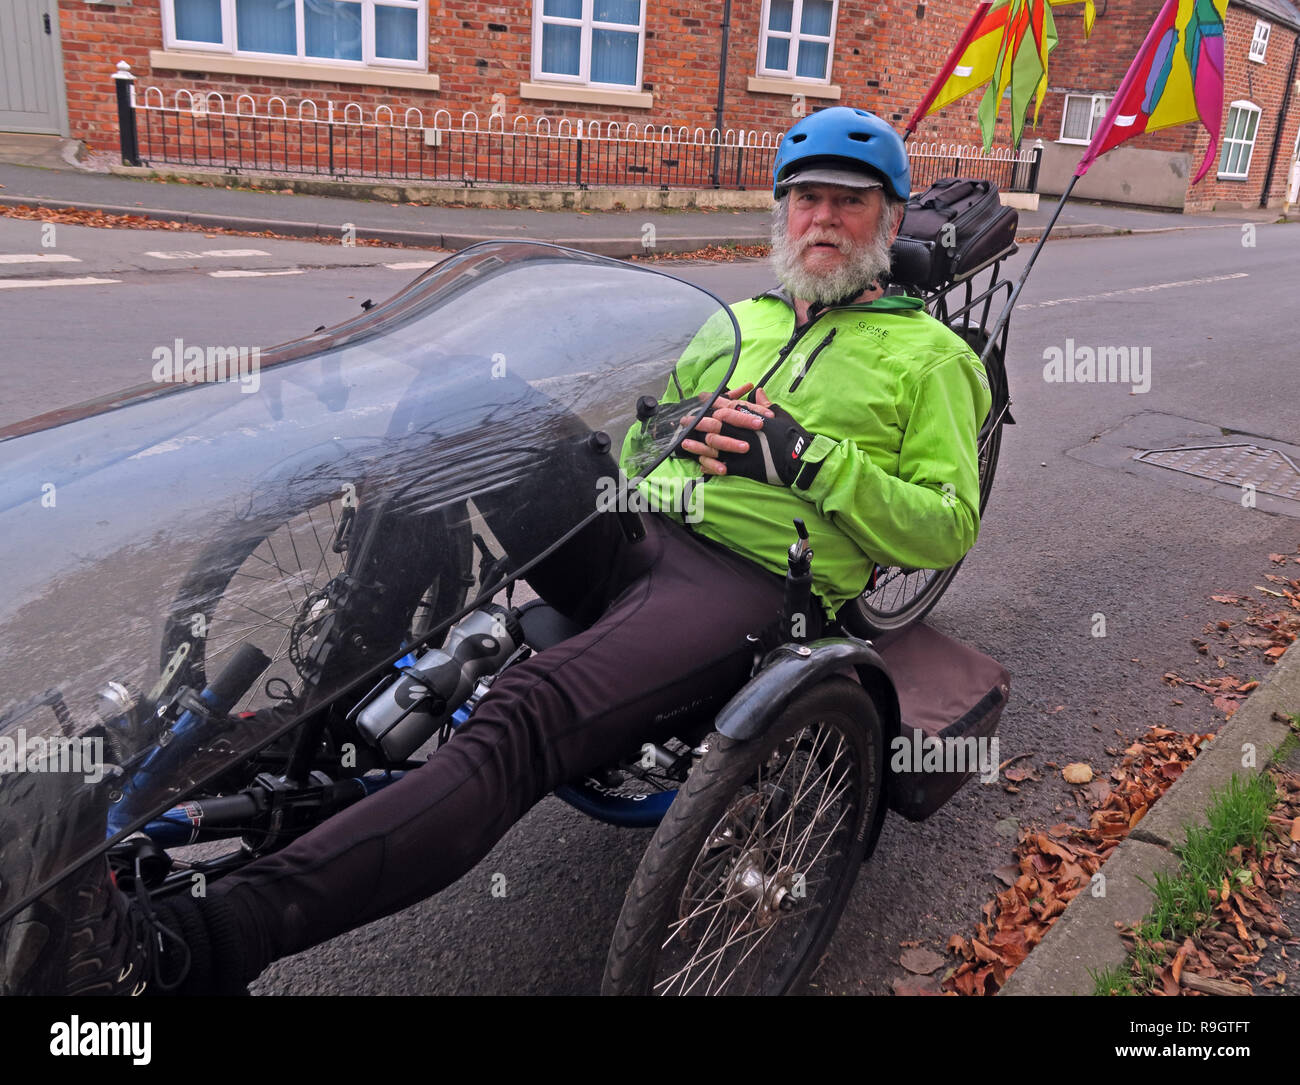 Keith auf einem liegedreirad Bike, Antrobus, Northwich, Cheshire, North West England, UK, CW9 6JW Stockfoto